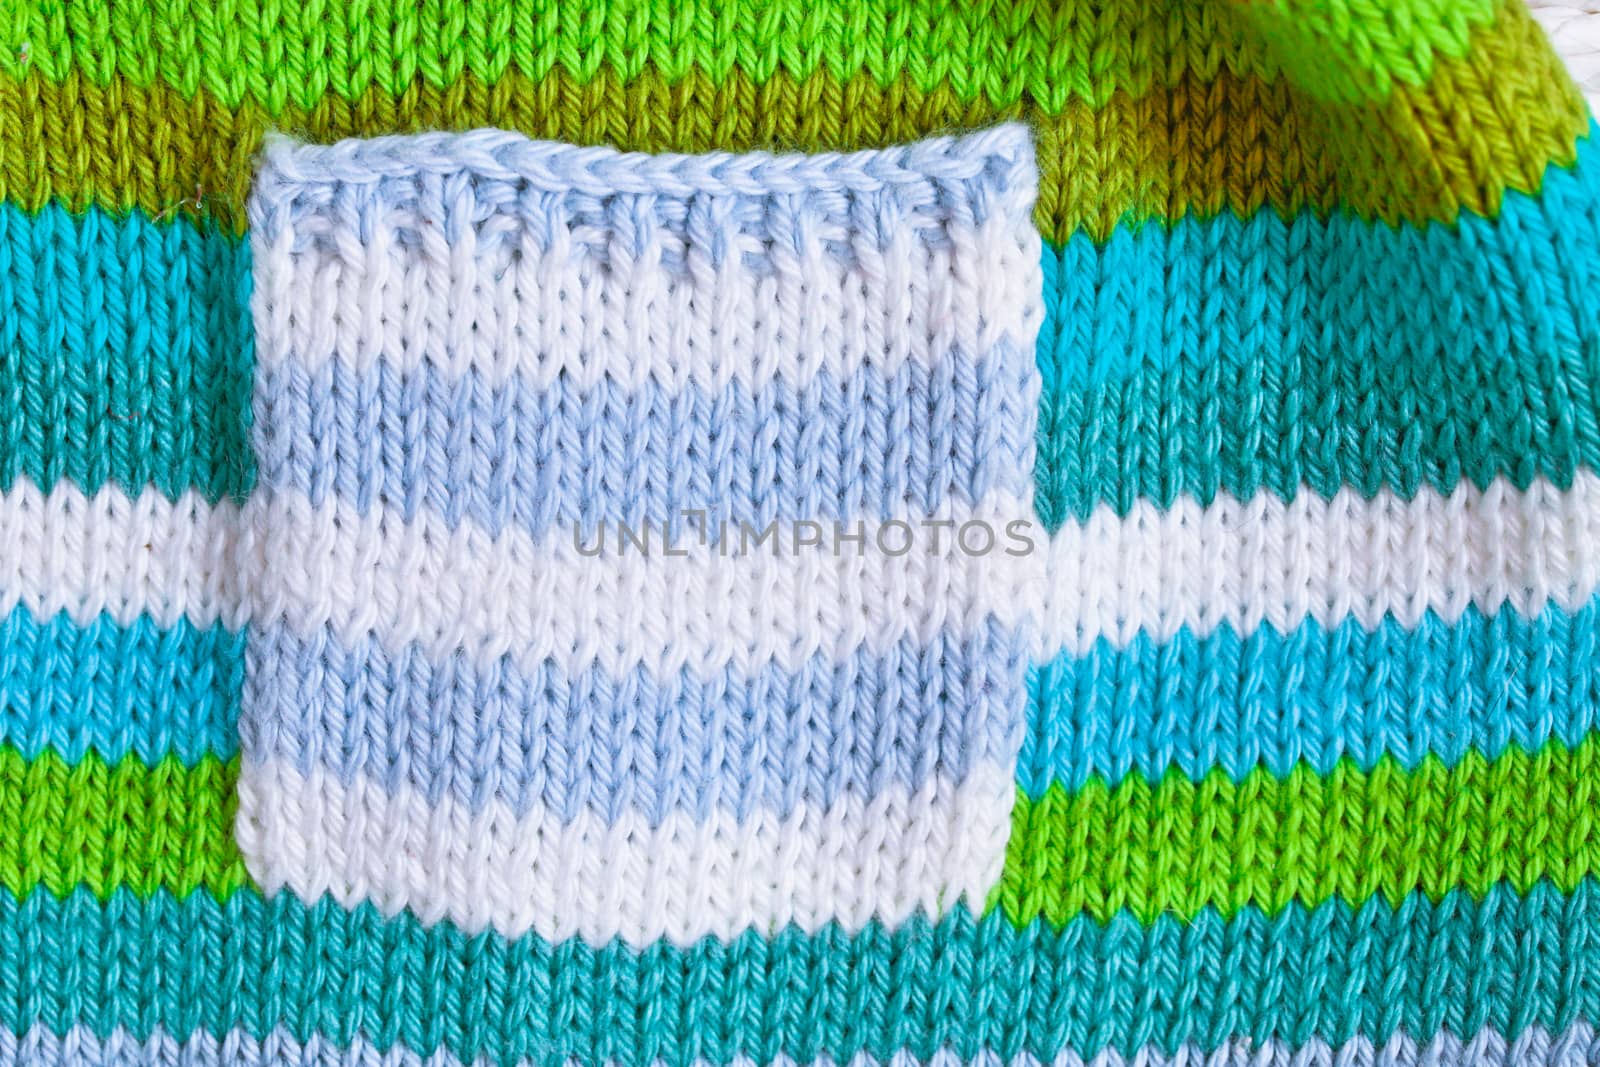 Babies' jumper by trgowanlock